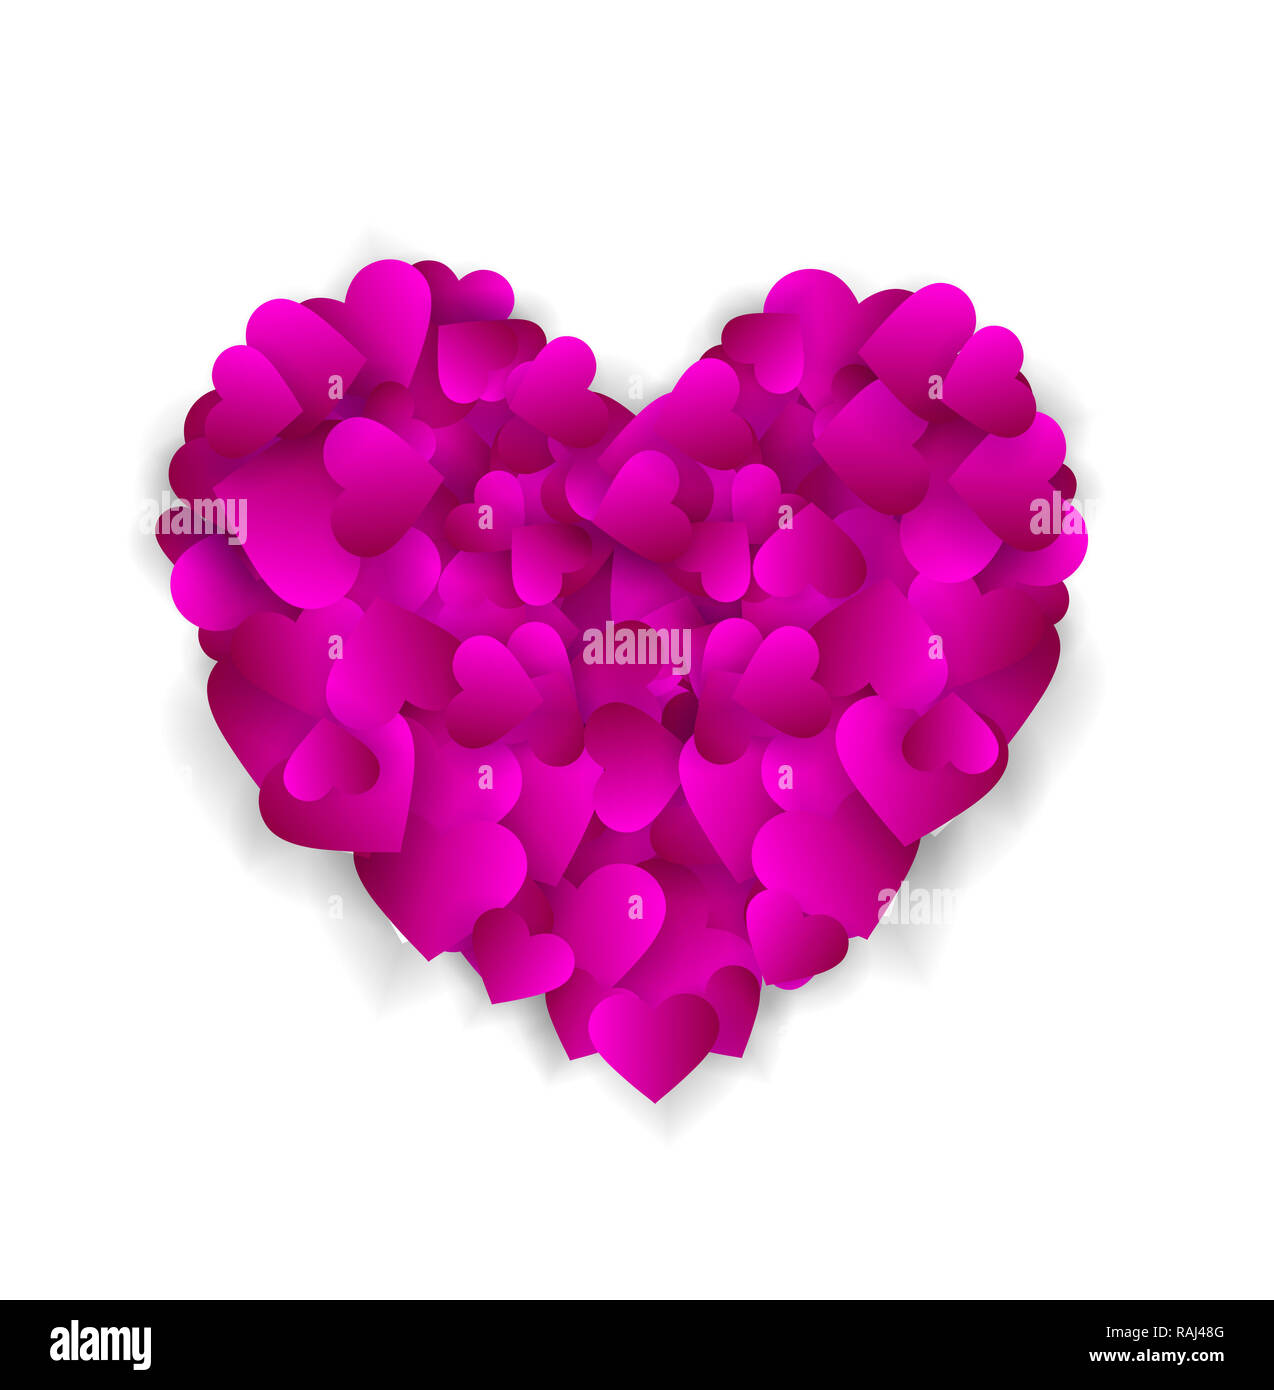 Big purple heart fait de petits coeurs isolé sur fond blanc, symbole de l'amour, la loyauté et la gentillesse, l'élément pour la saint valentin ou un mariage greet Banque D'Images